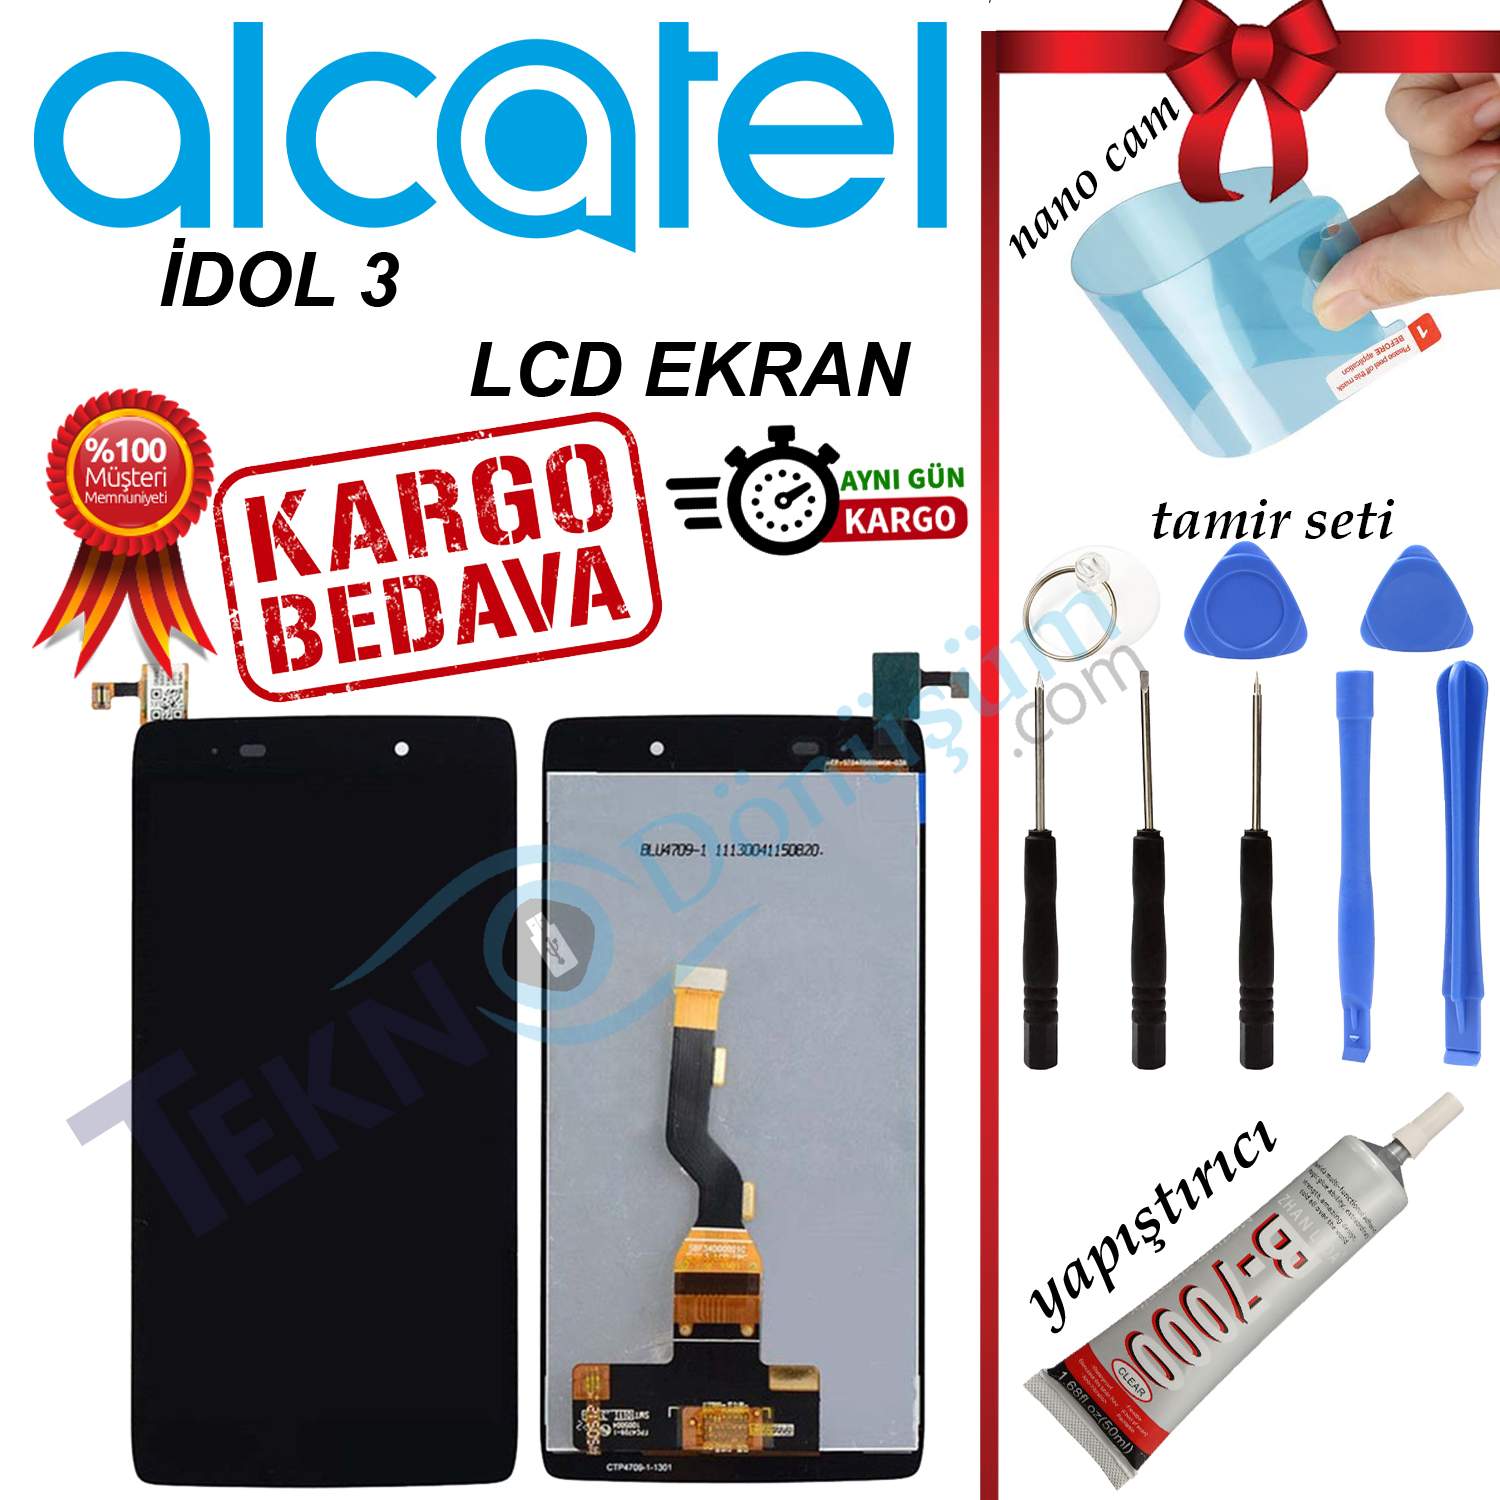 ALCATEL İDOL 3 ORJİNAL LCD DOKUNMATİK EKRAN